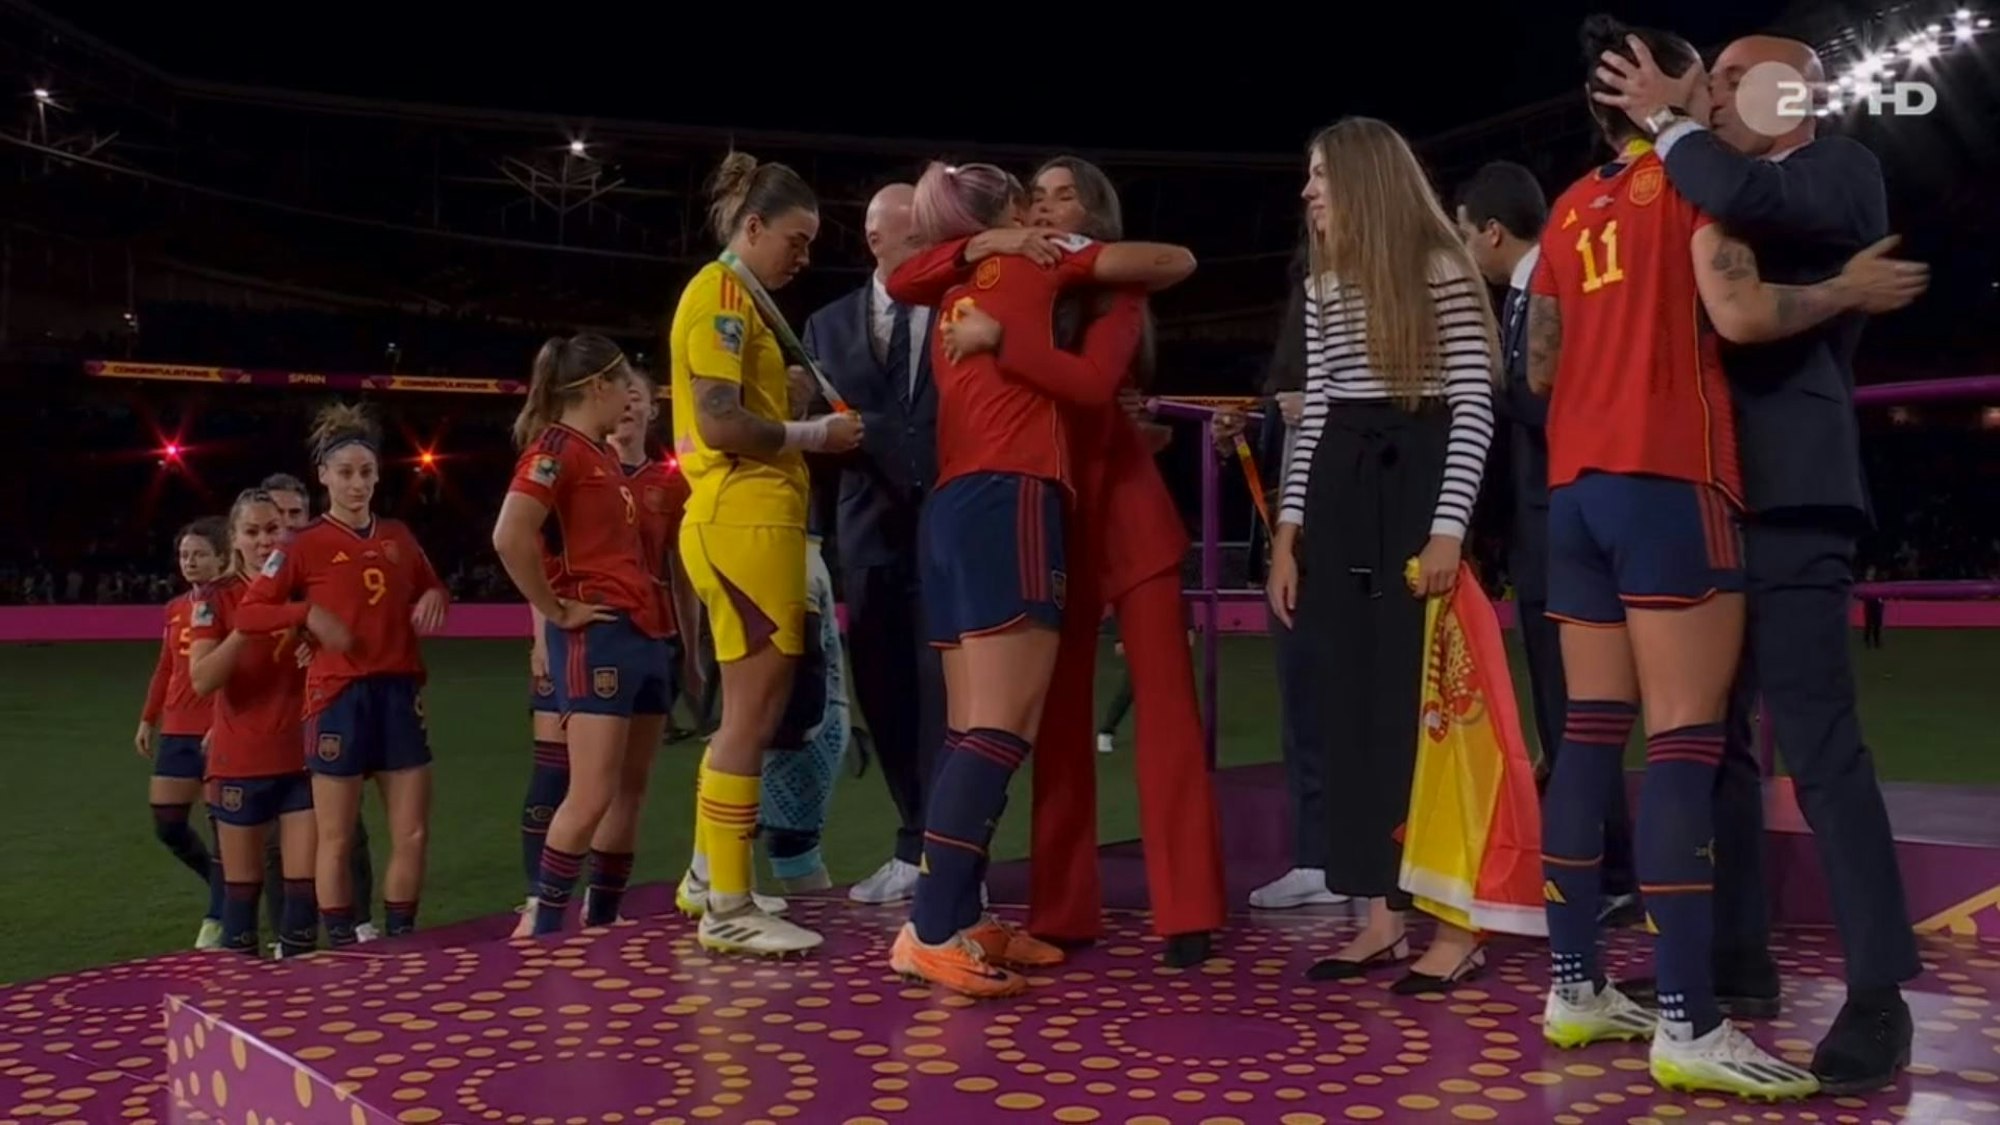 Spaniens Verbands-Boss Luis Rubiales küsst bei der Titel-Zeremonie nach dem Finale der Frauen-WM Spielerin Jennifer Hermoso ungefragt.